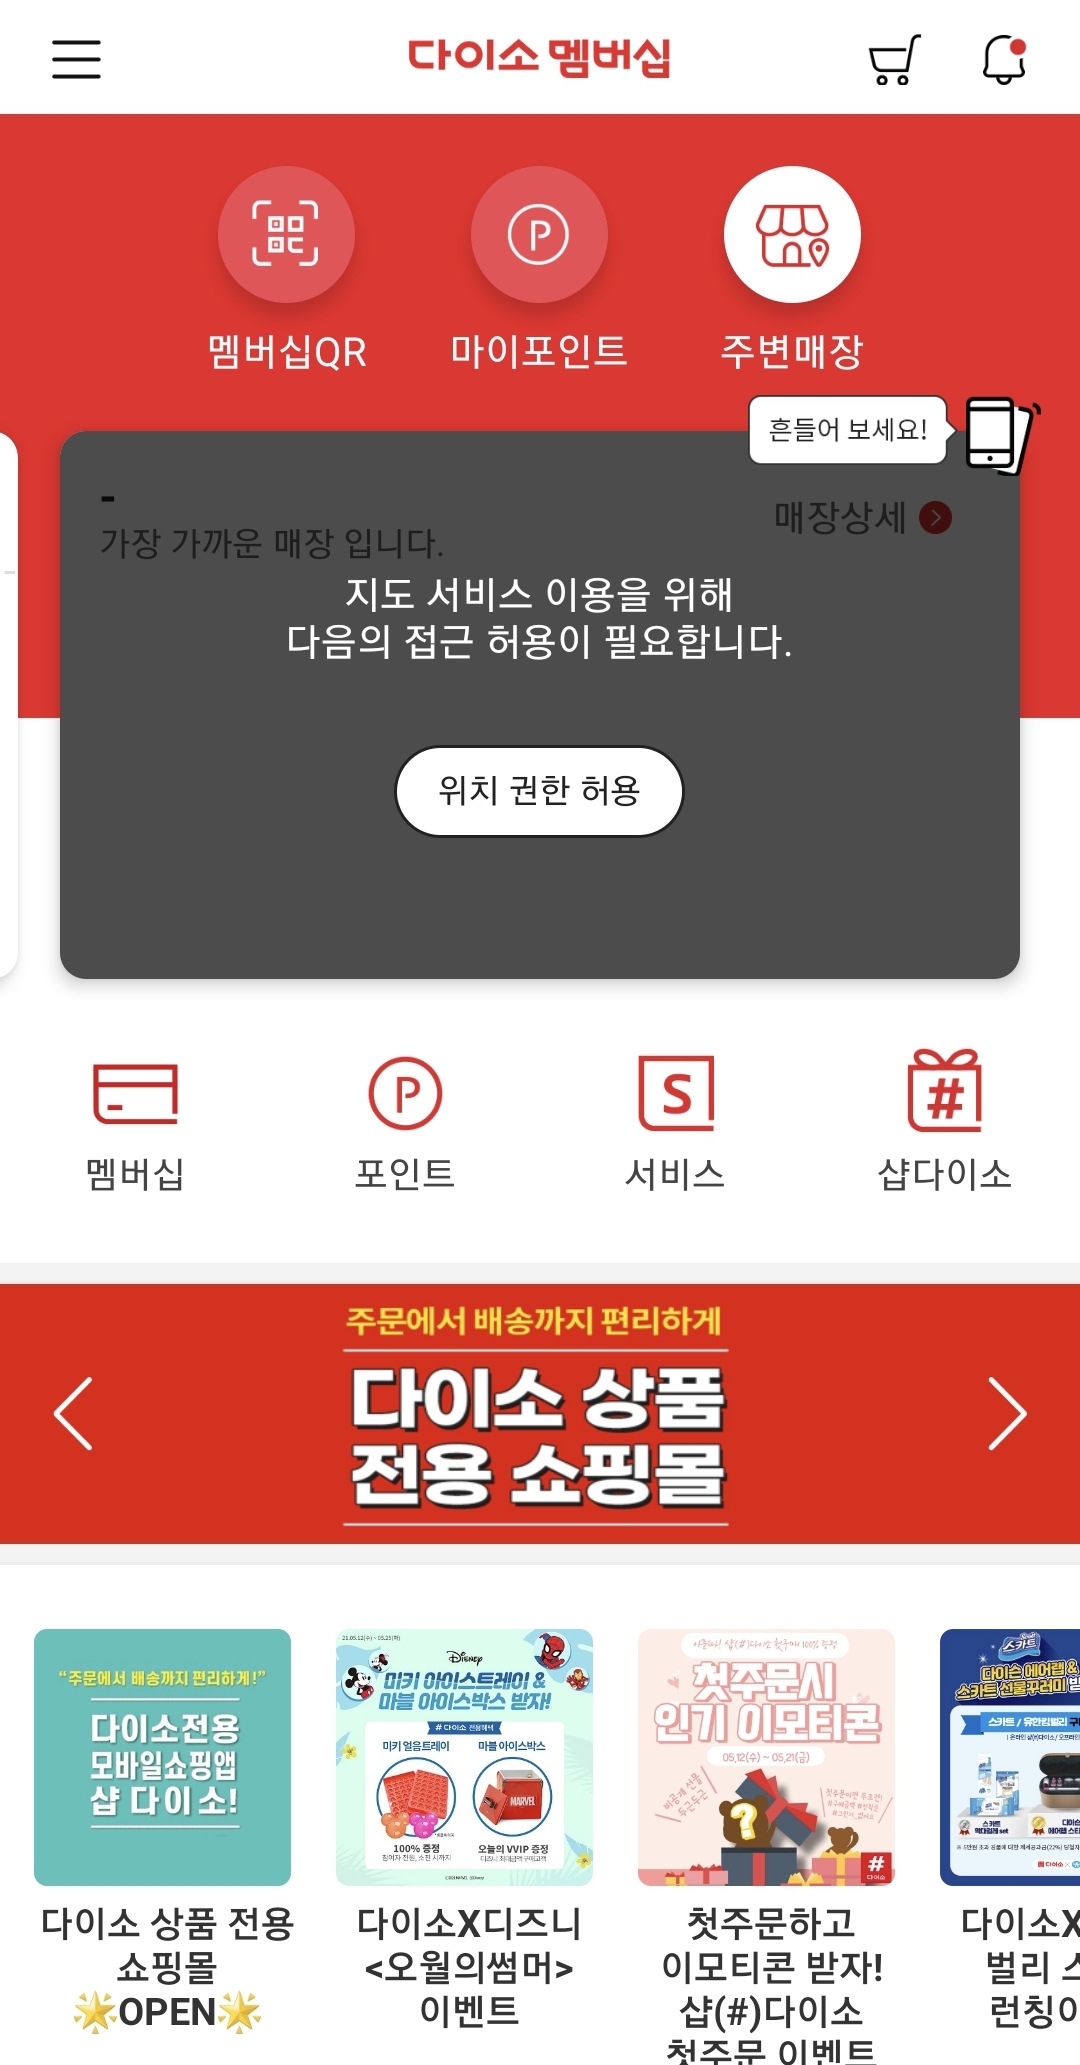 다이소 멤버십 앱으로 가까운 매장찾기, 영업시간·전화번호까지 확인하기